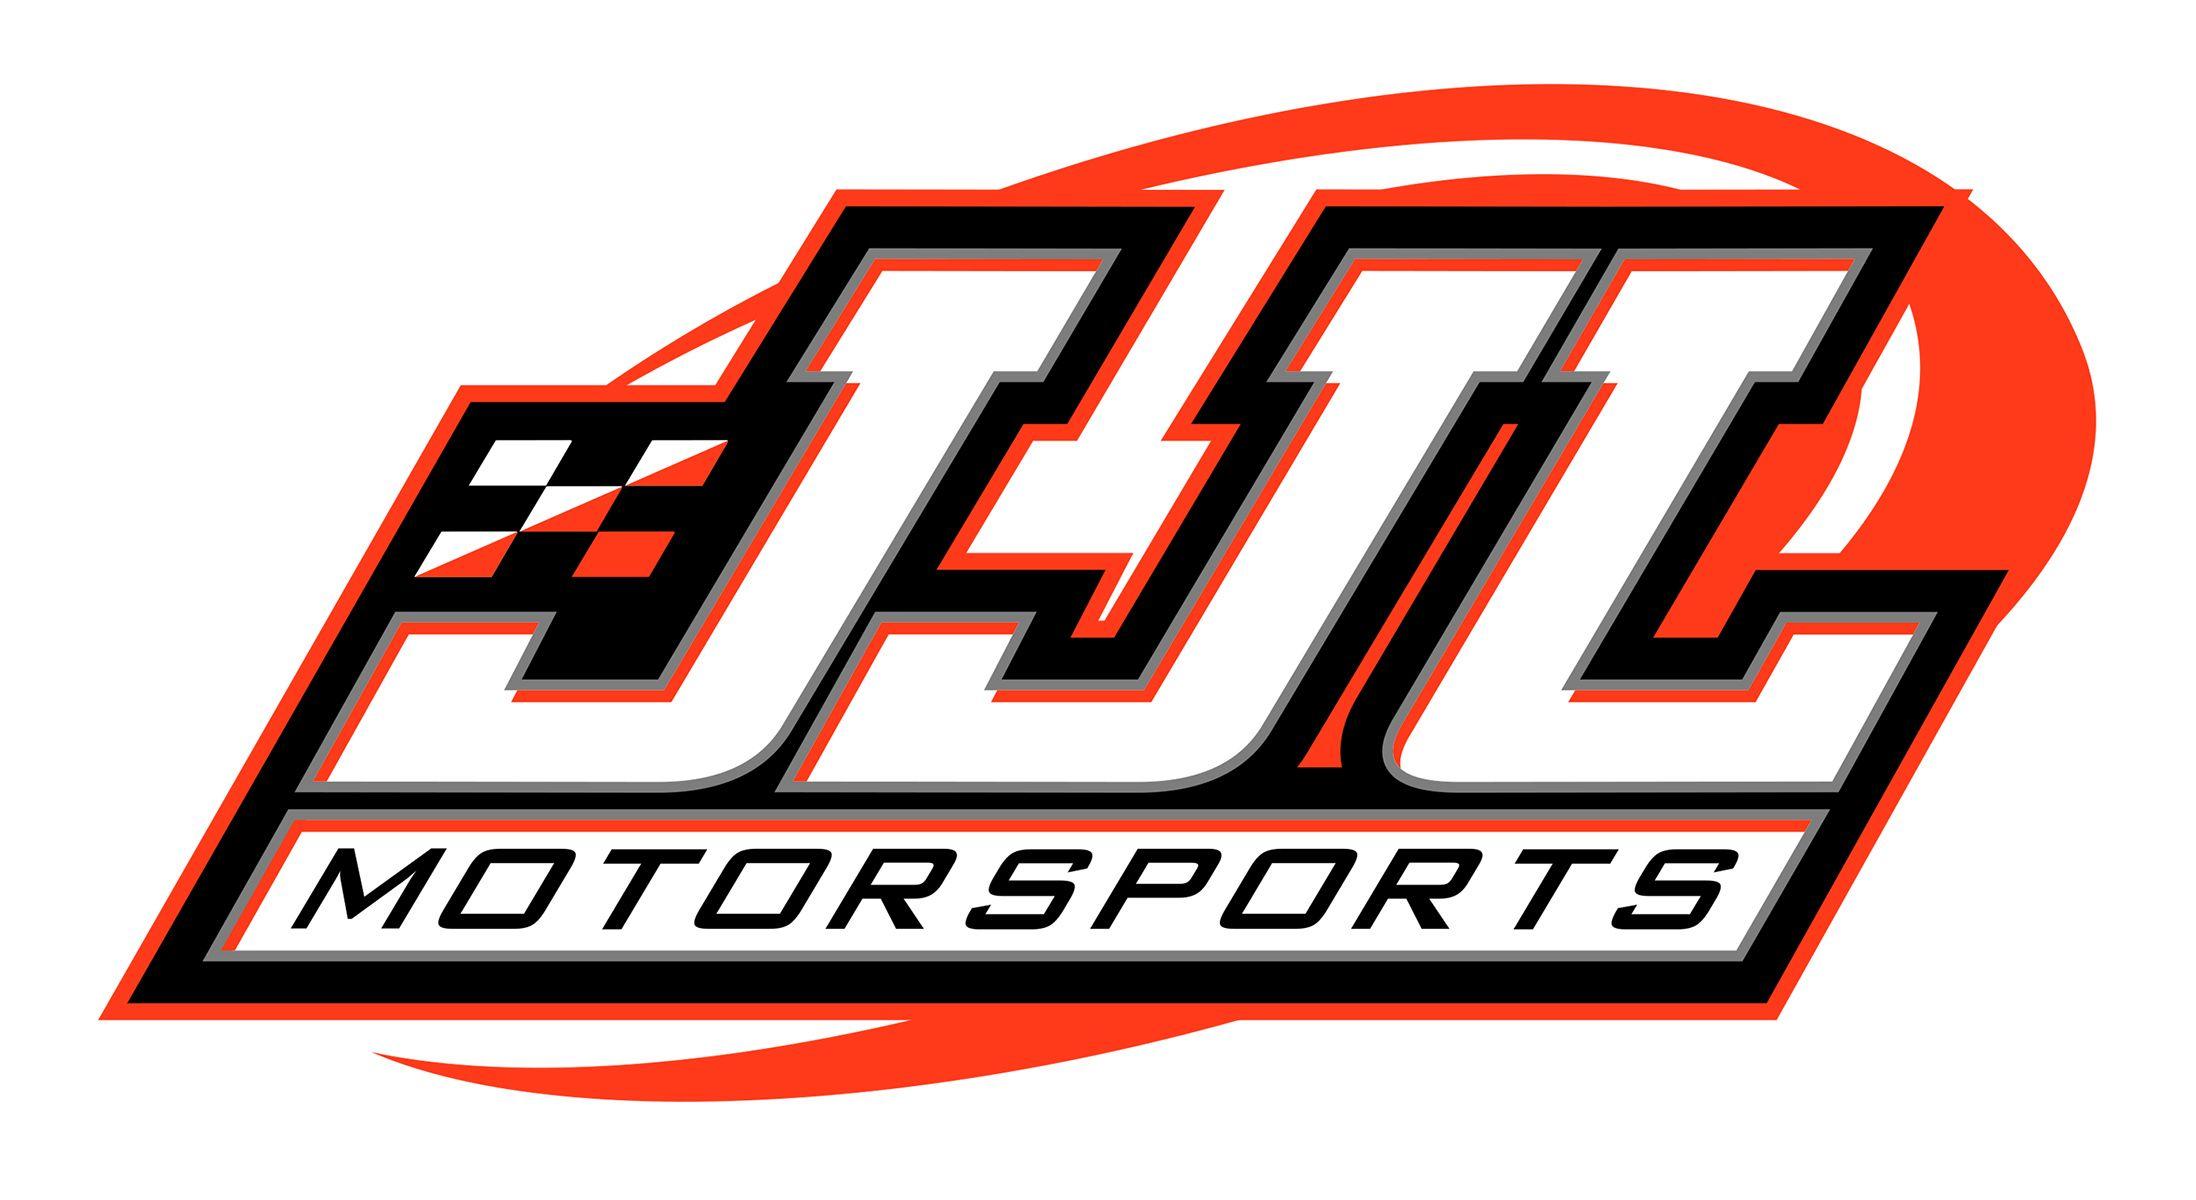 NASCAR Motorsports Logo - JJL Motorsports set for increased NASCAR Truck Series presence in ...